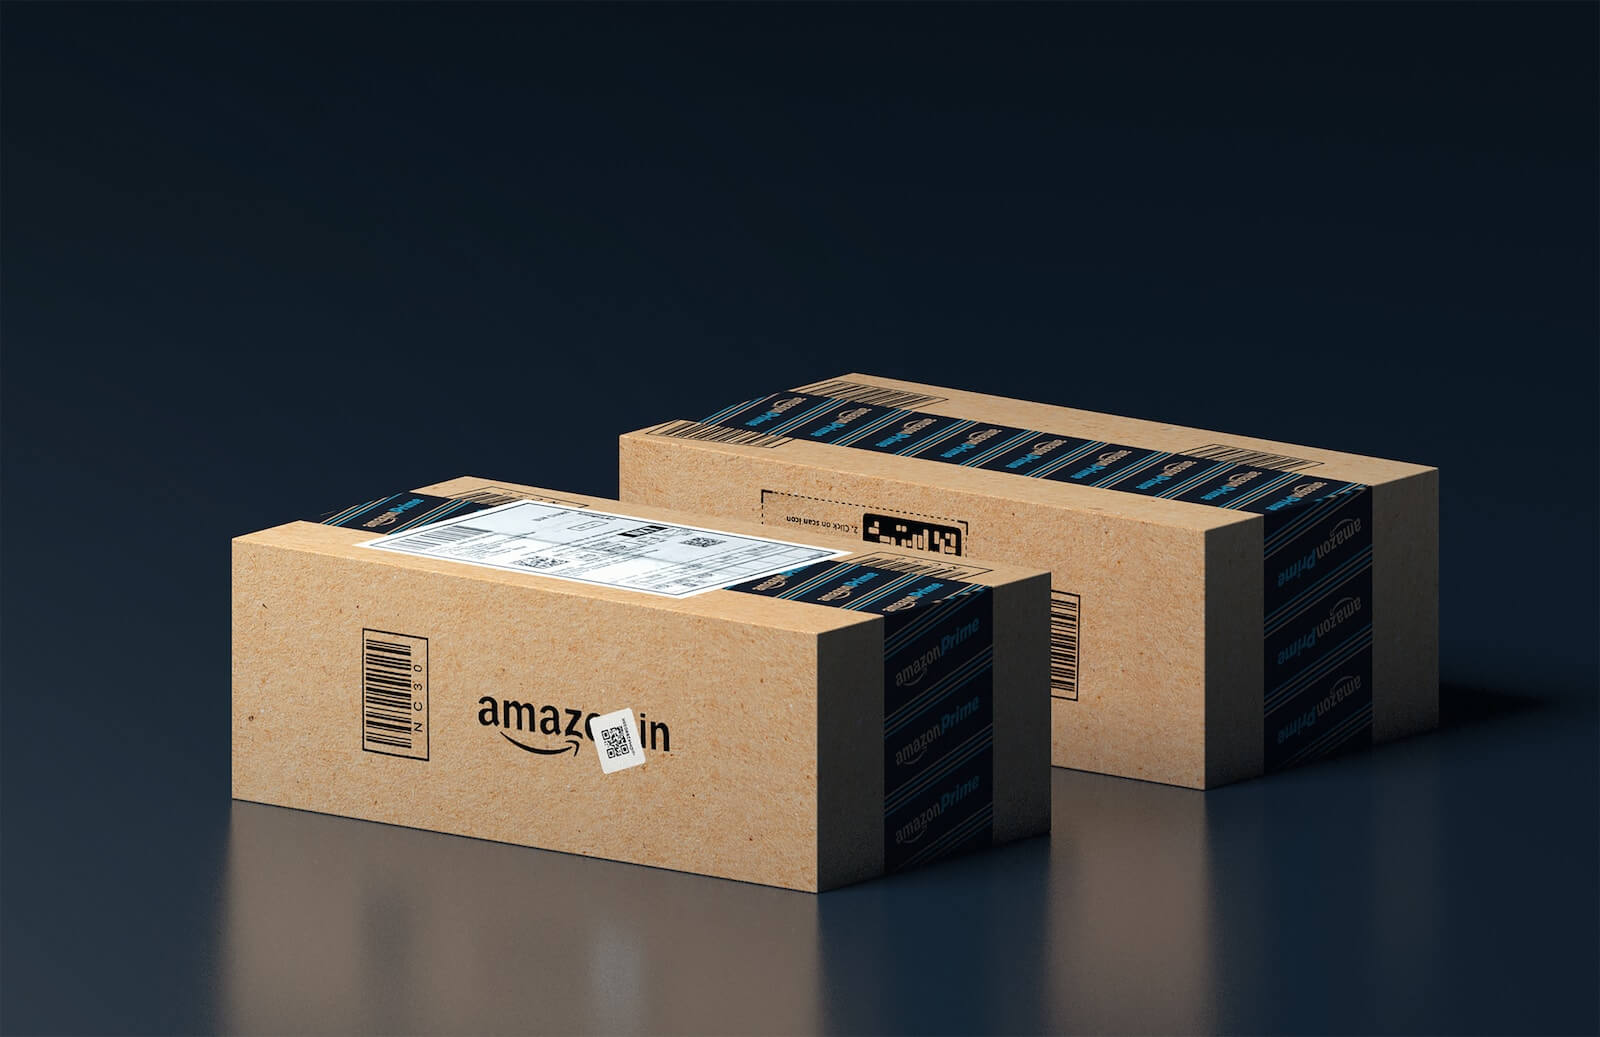 Two Amazon boxes